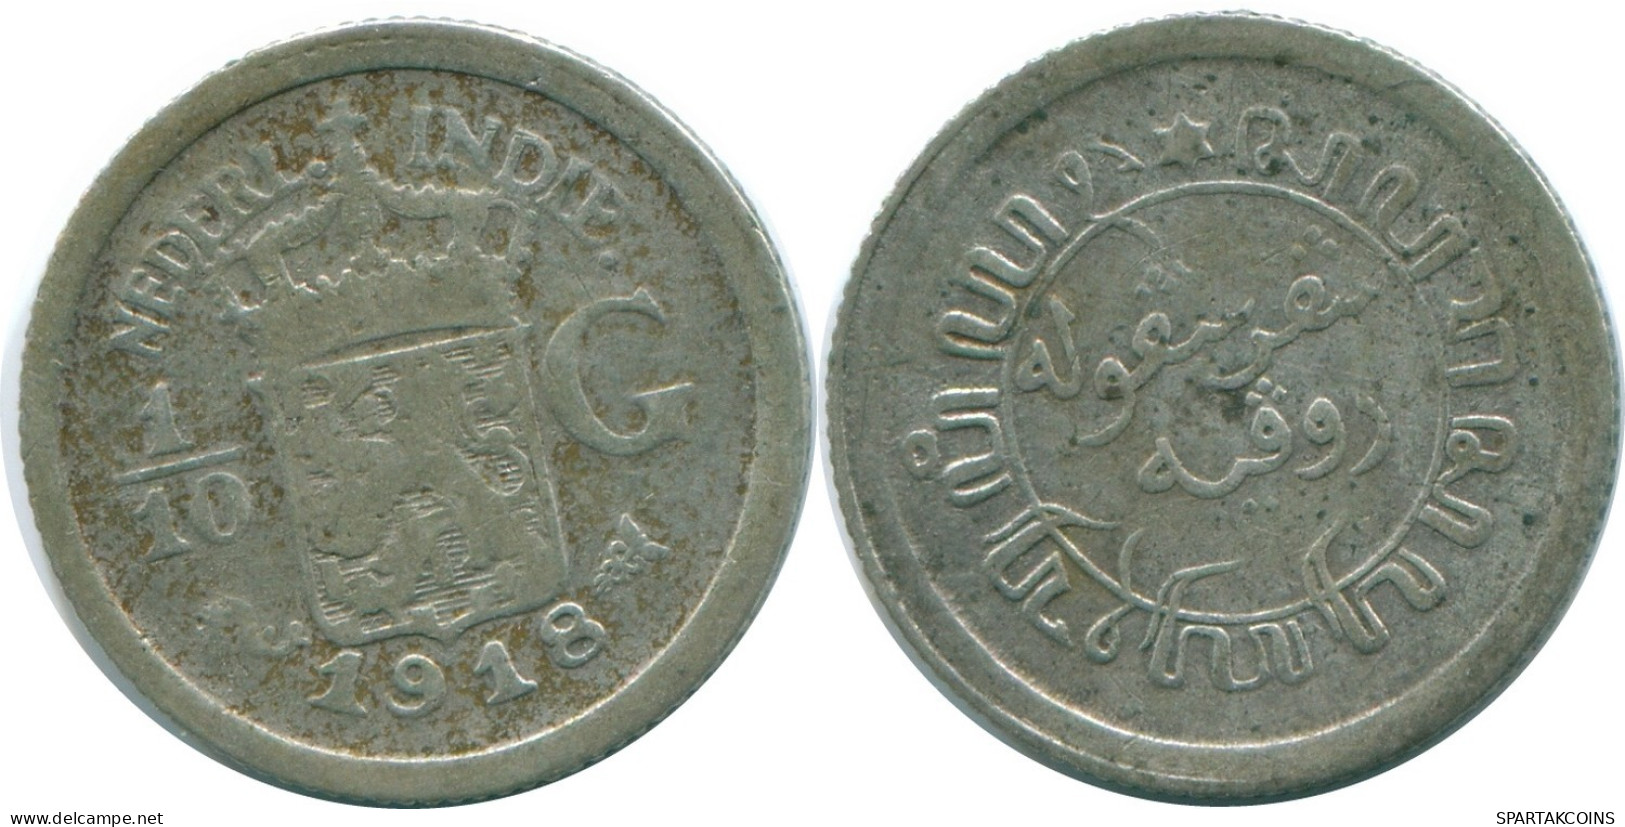 1/10 GULDEN 1918 NIEDERLANDE OSTINDIEN SILBER Koloniale Münze #NL13323.3.D.A - Niederländisch-Indien